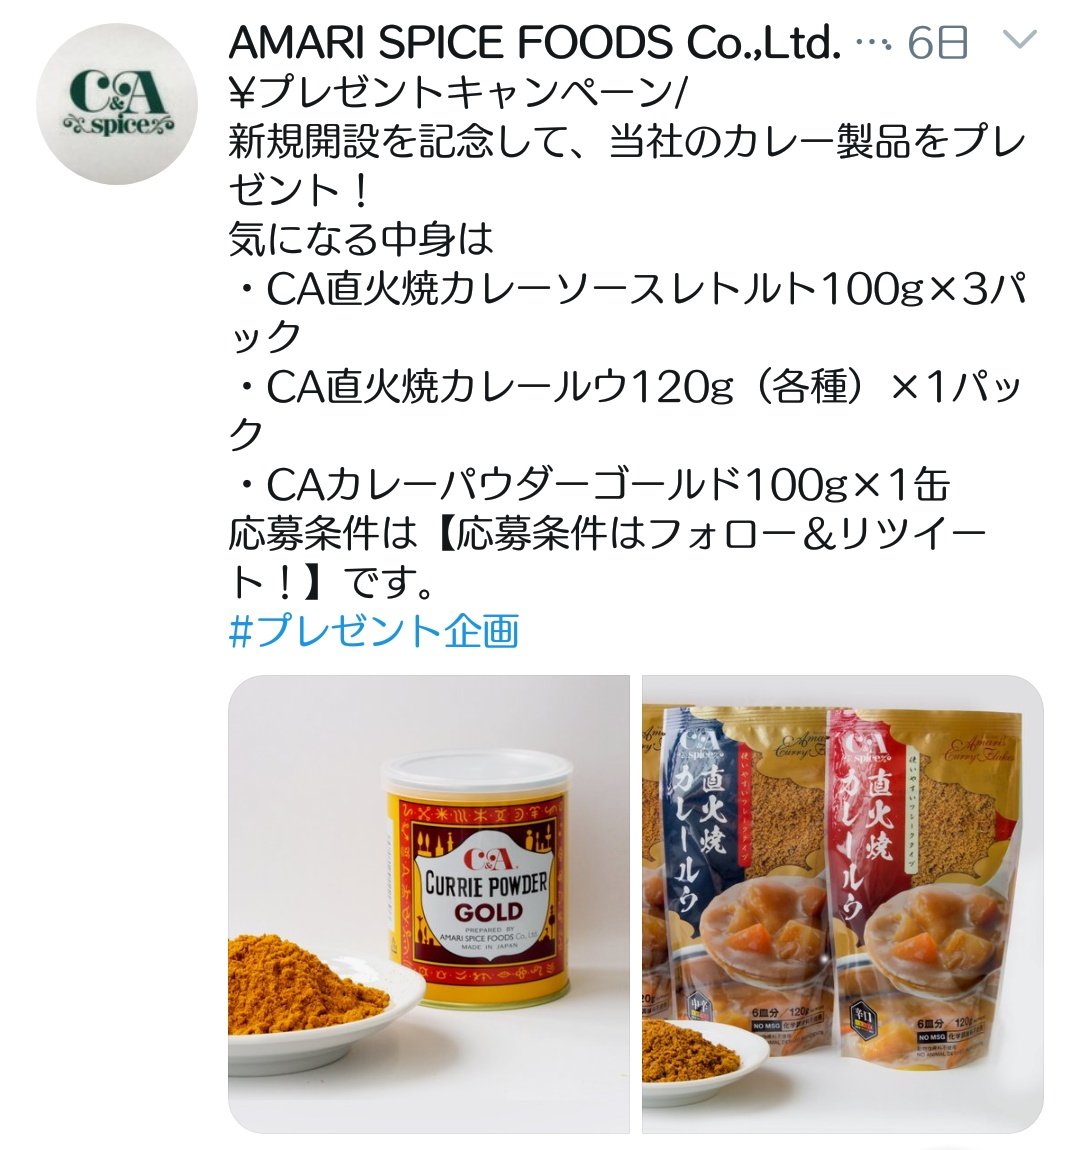 Amari Spice Foods Co Ltd Amari Ltd Twitter